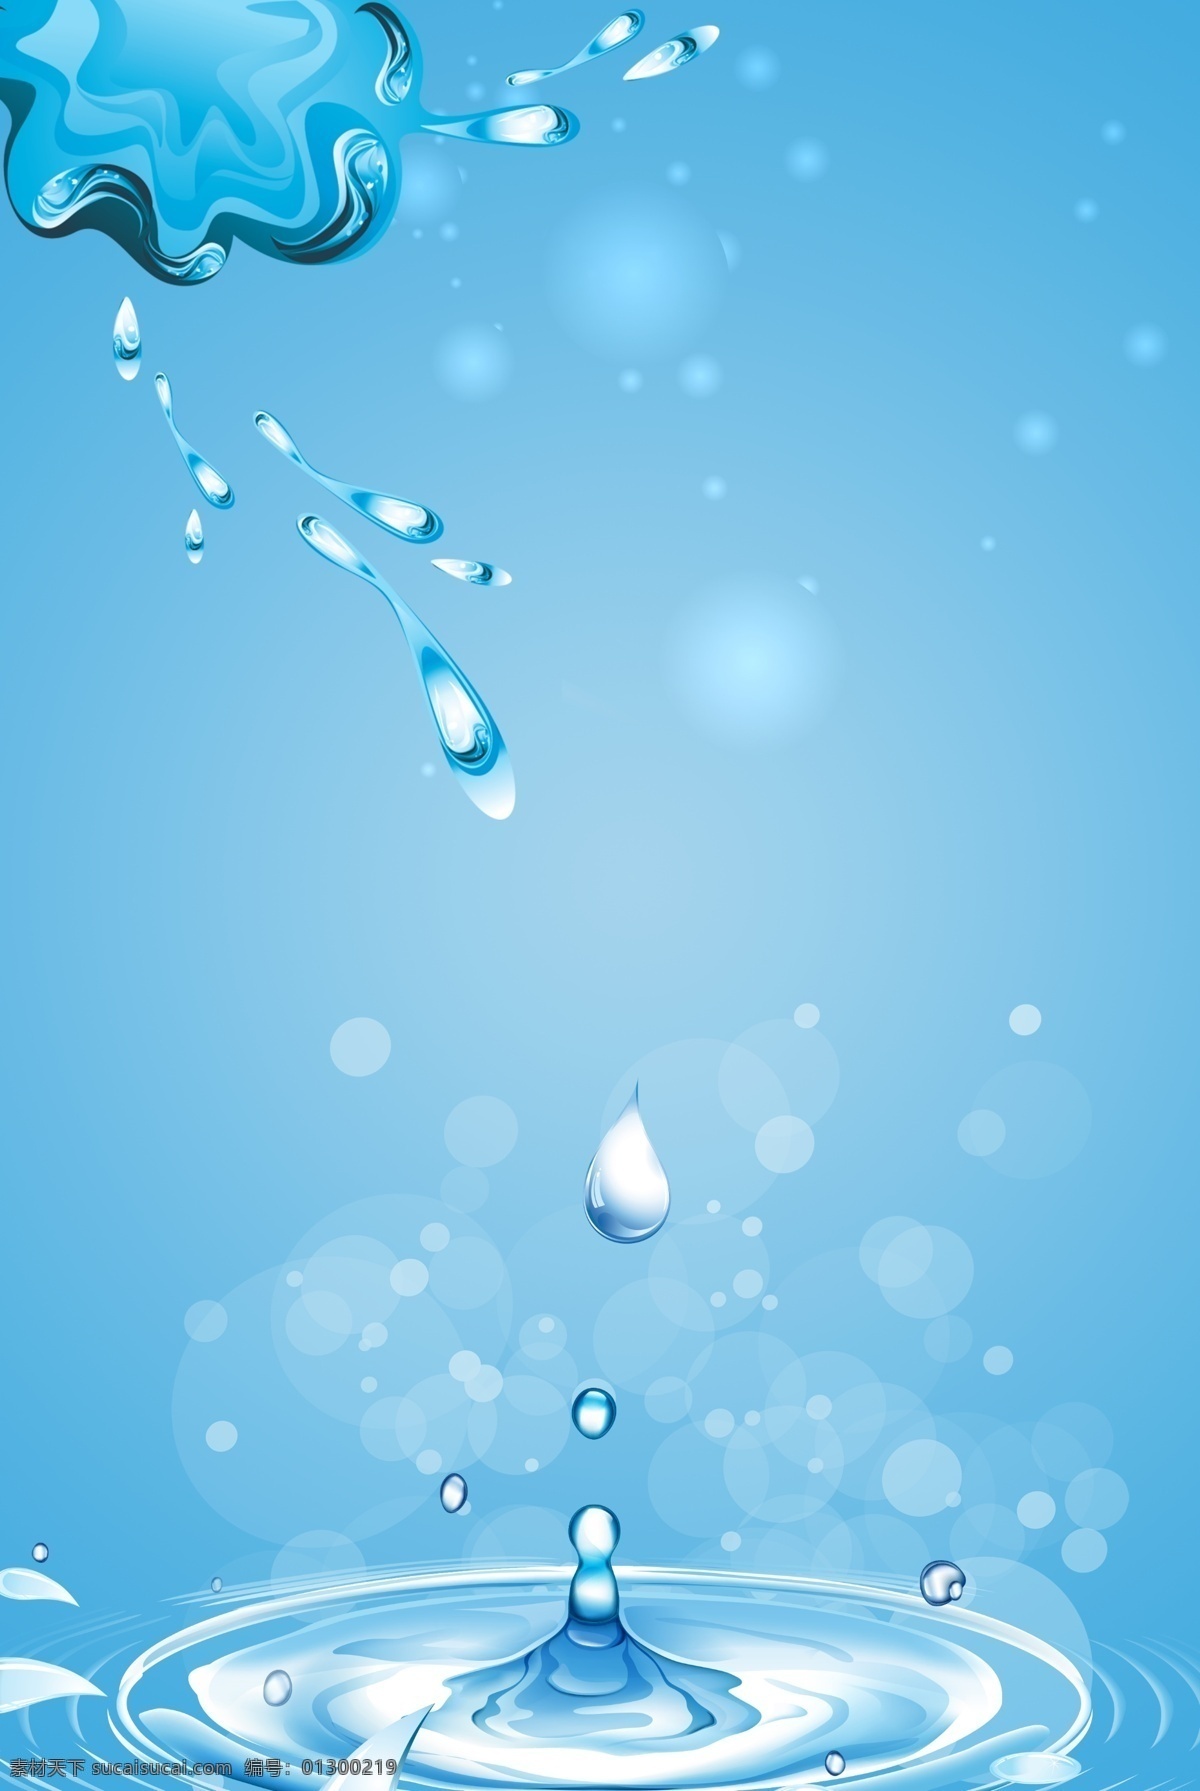 简约 蓝色 世界 水日 环保 创意 合成 世界水日 水资源 保护水资源 节约用水 清新 水滴 水流